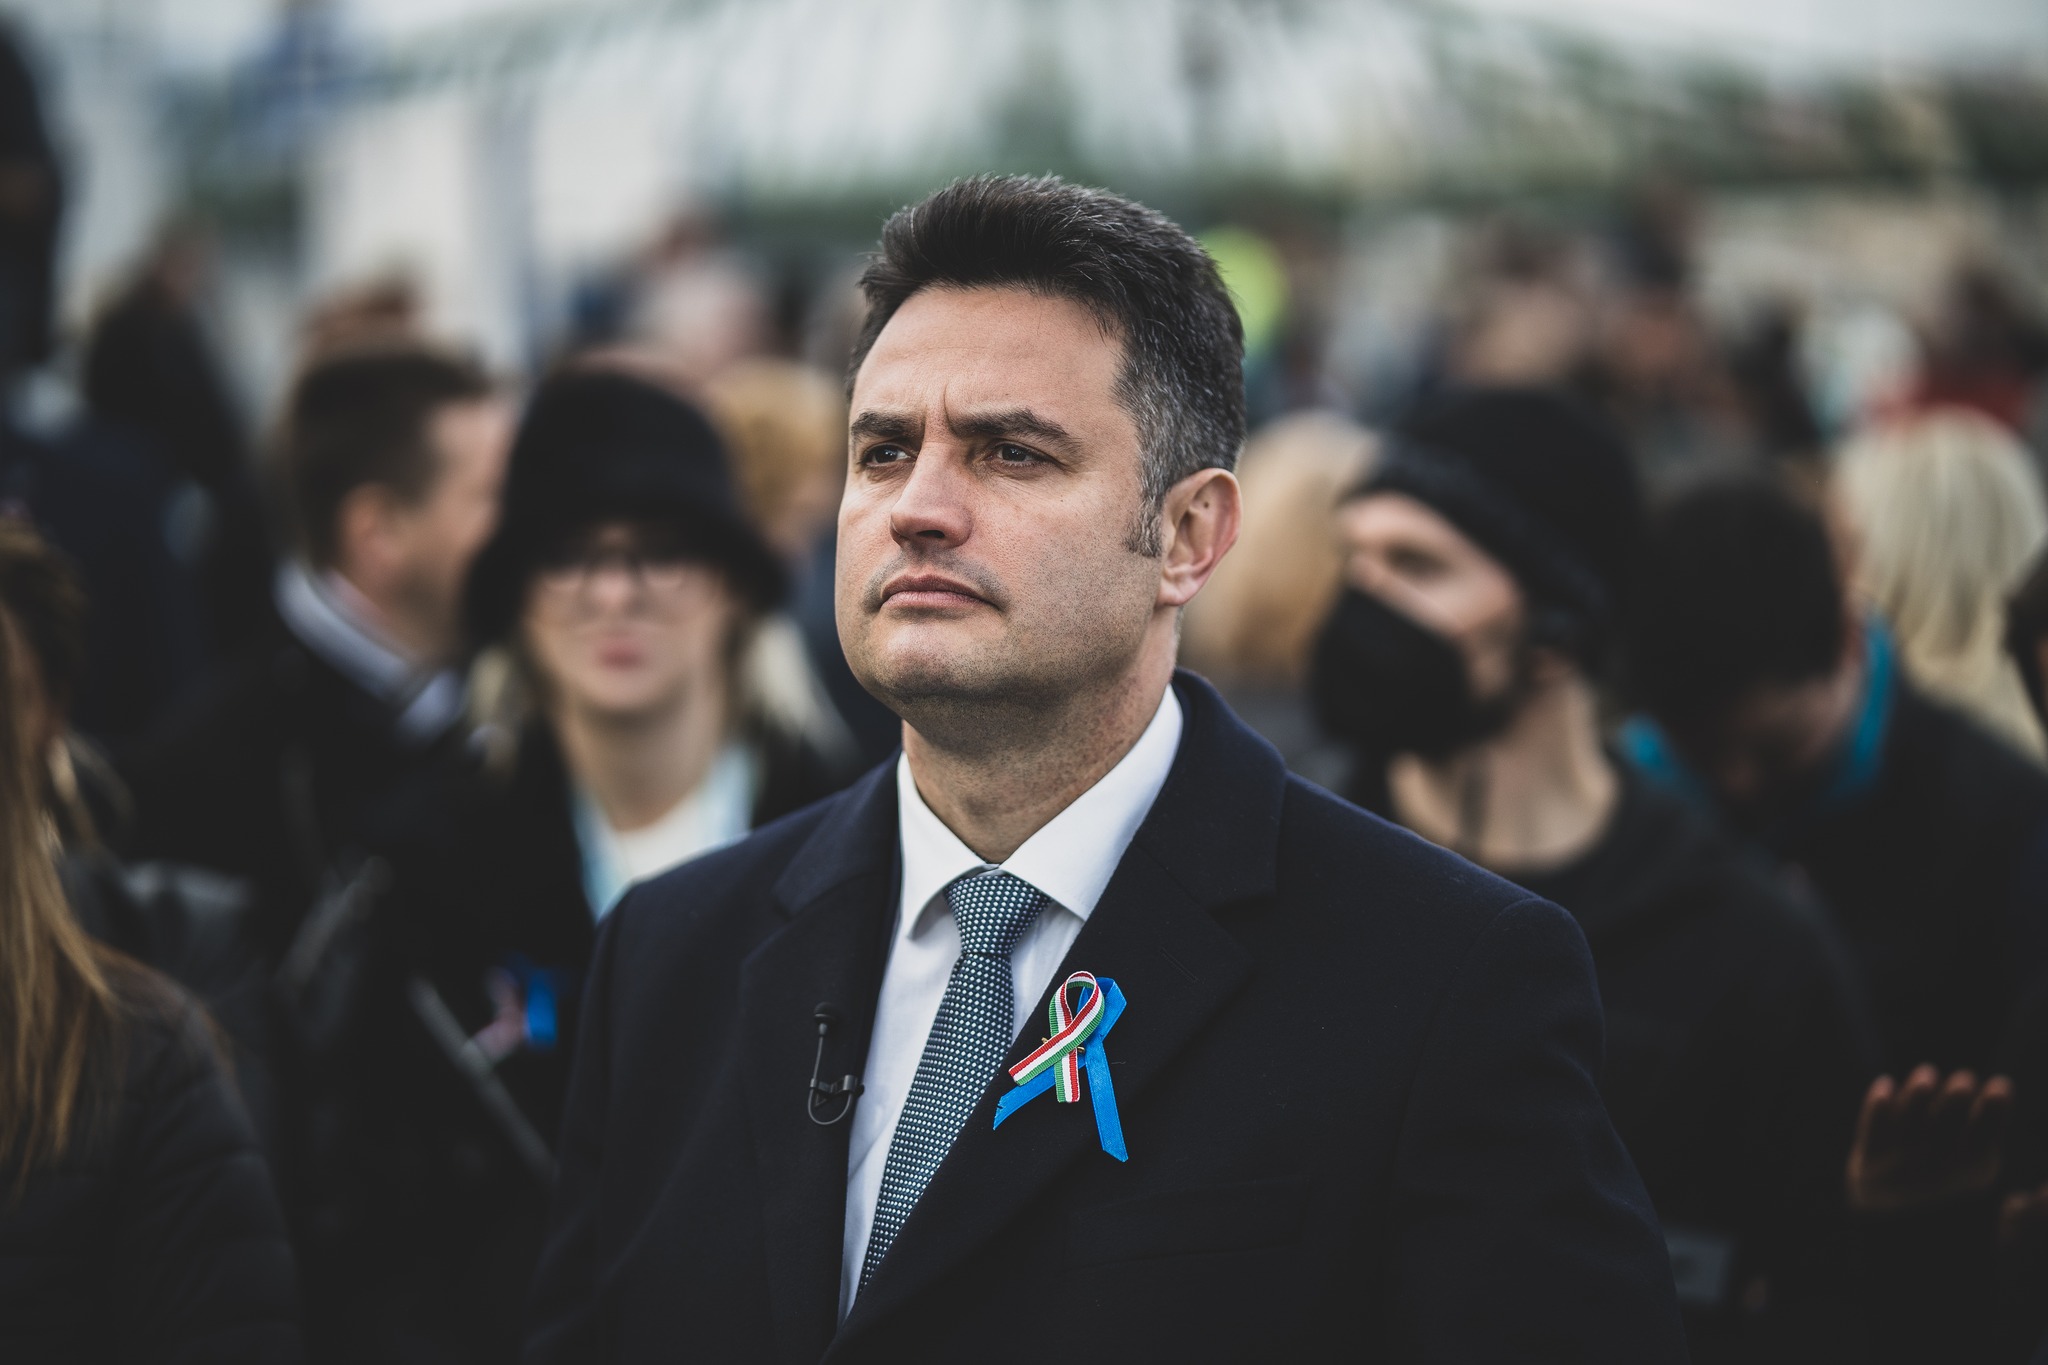 Márki-Zay's Mandate Goes to Politician of Jobbik